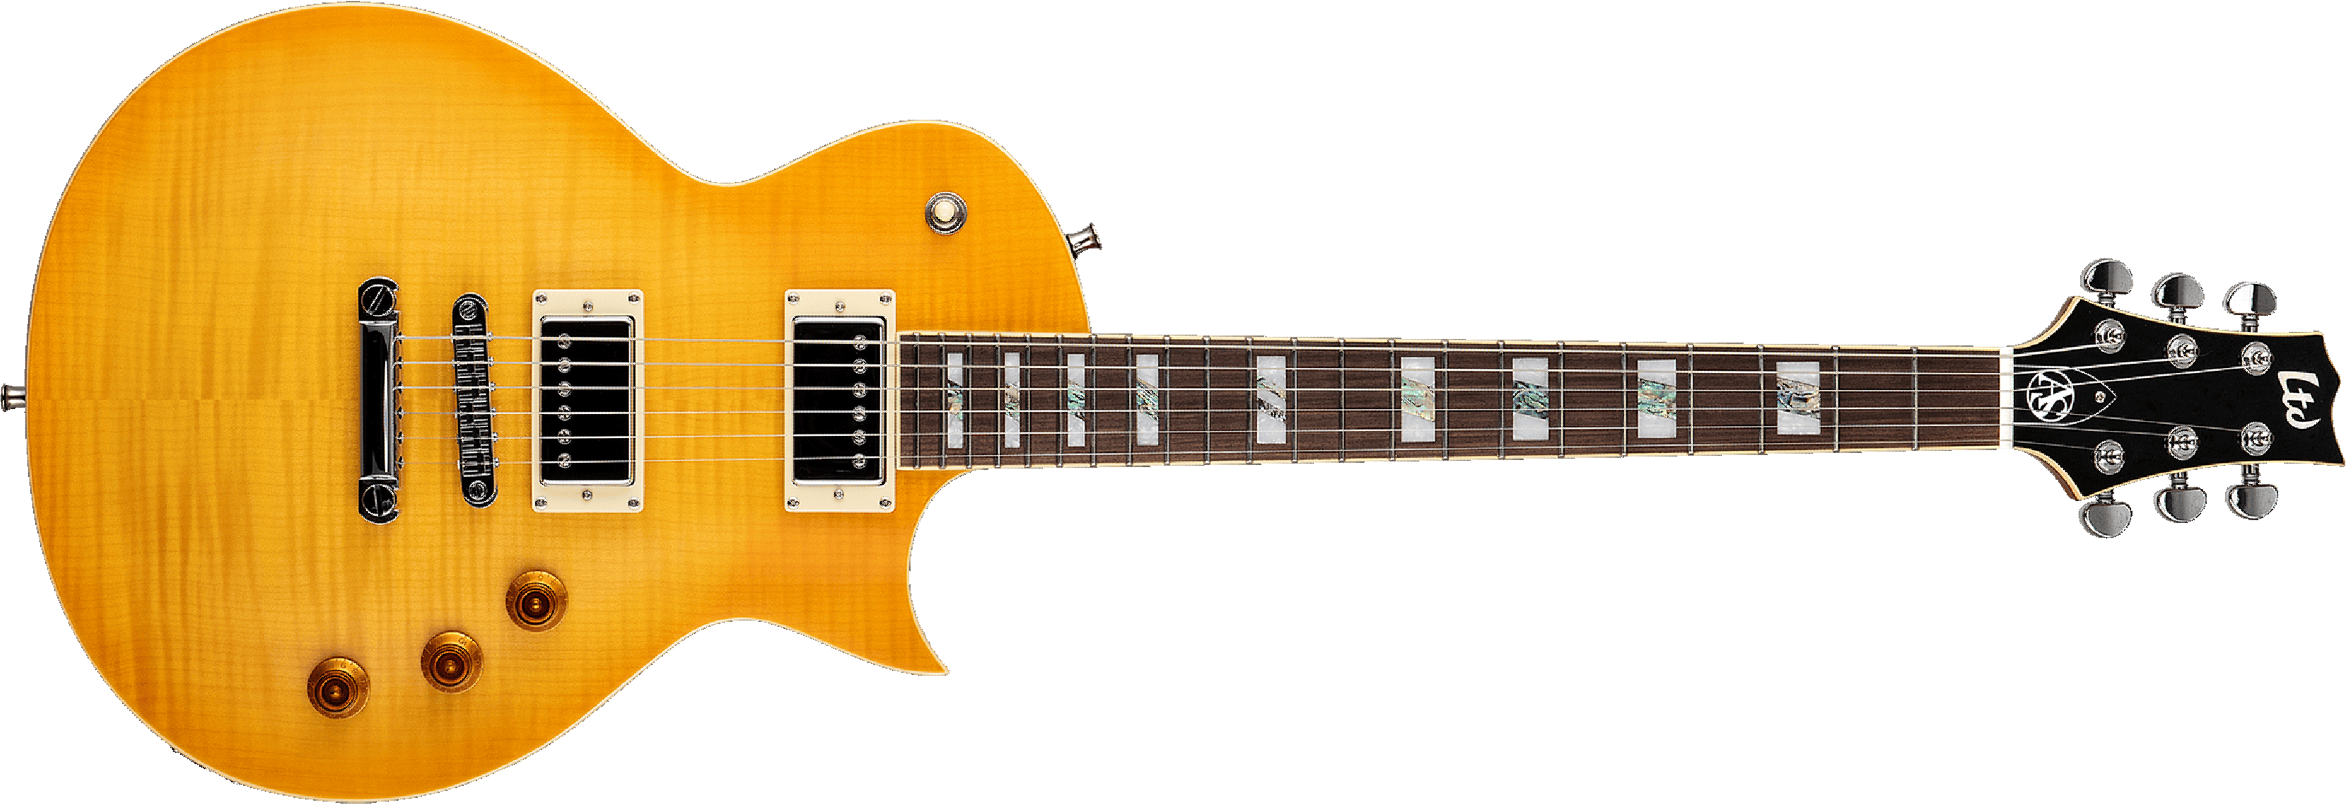 Ltd As1fm Alex Skolnick Signature Ht Hh Pf - Lemon Burst - Guitarra eléctrica de corte único. - Main picture